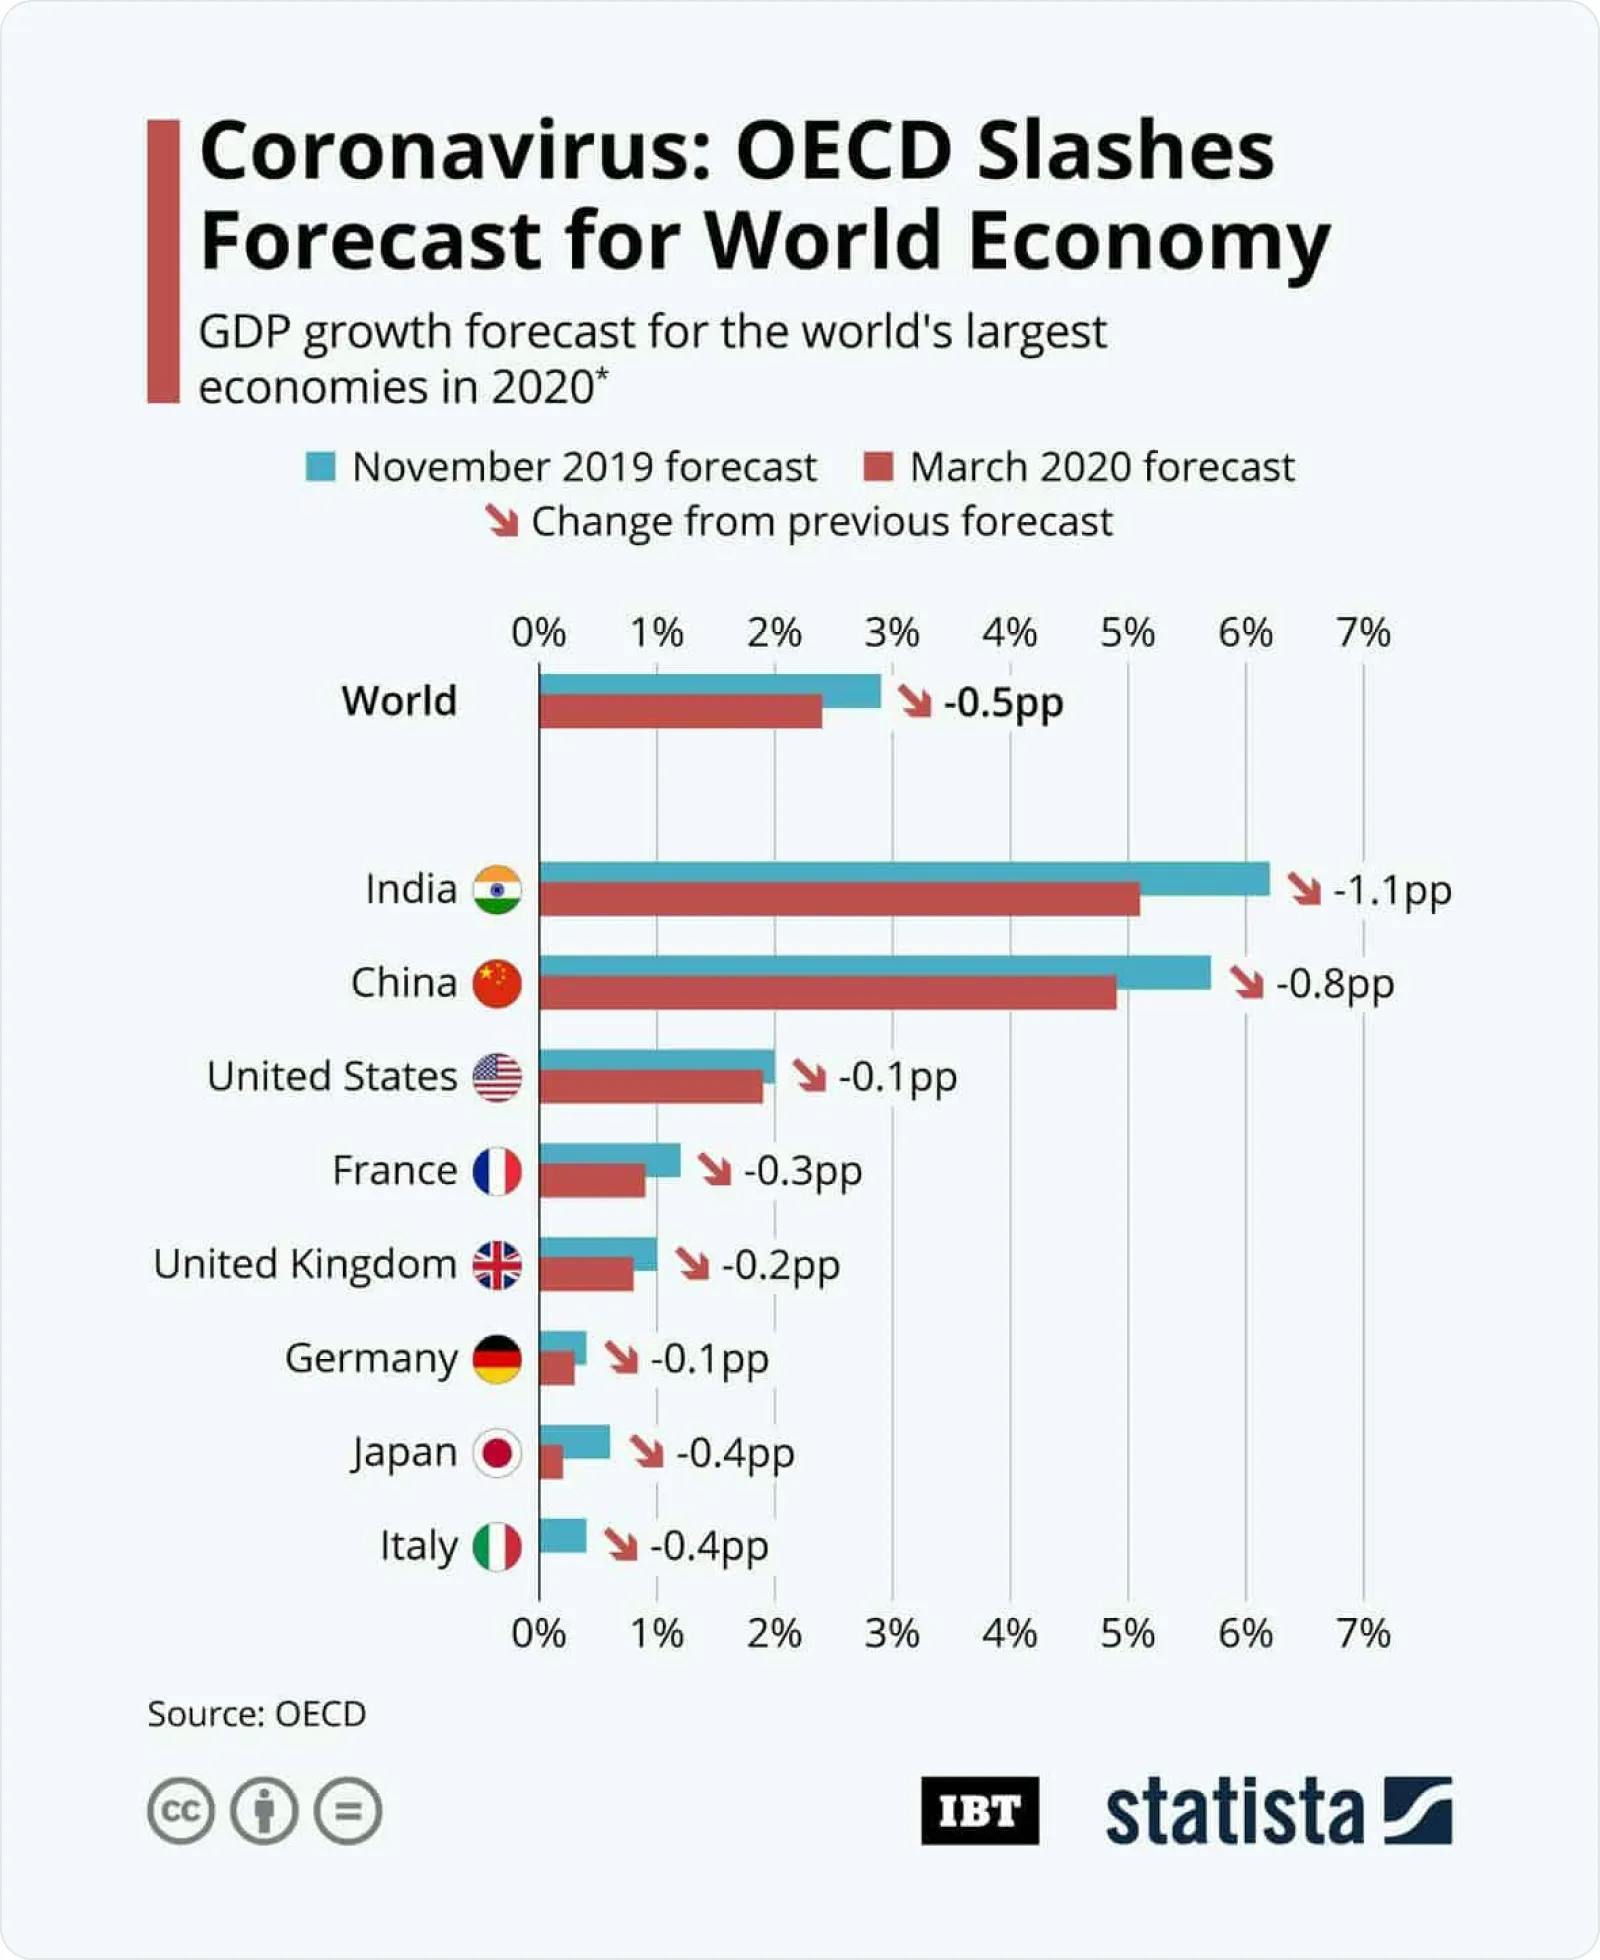 Coronavirus: OECD Slashes Forecast for World Economy